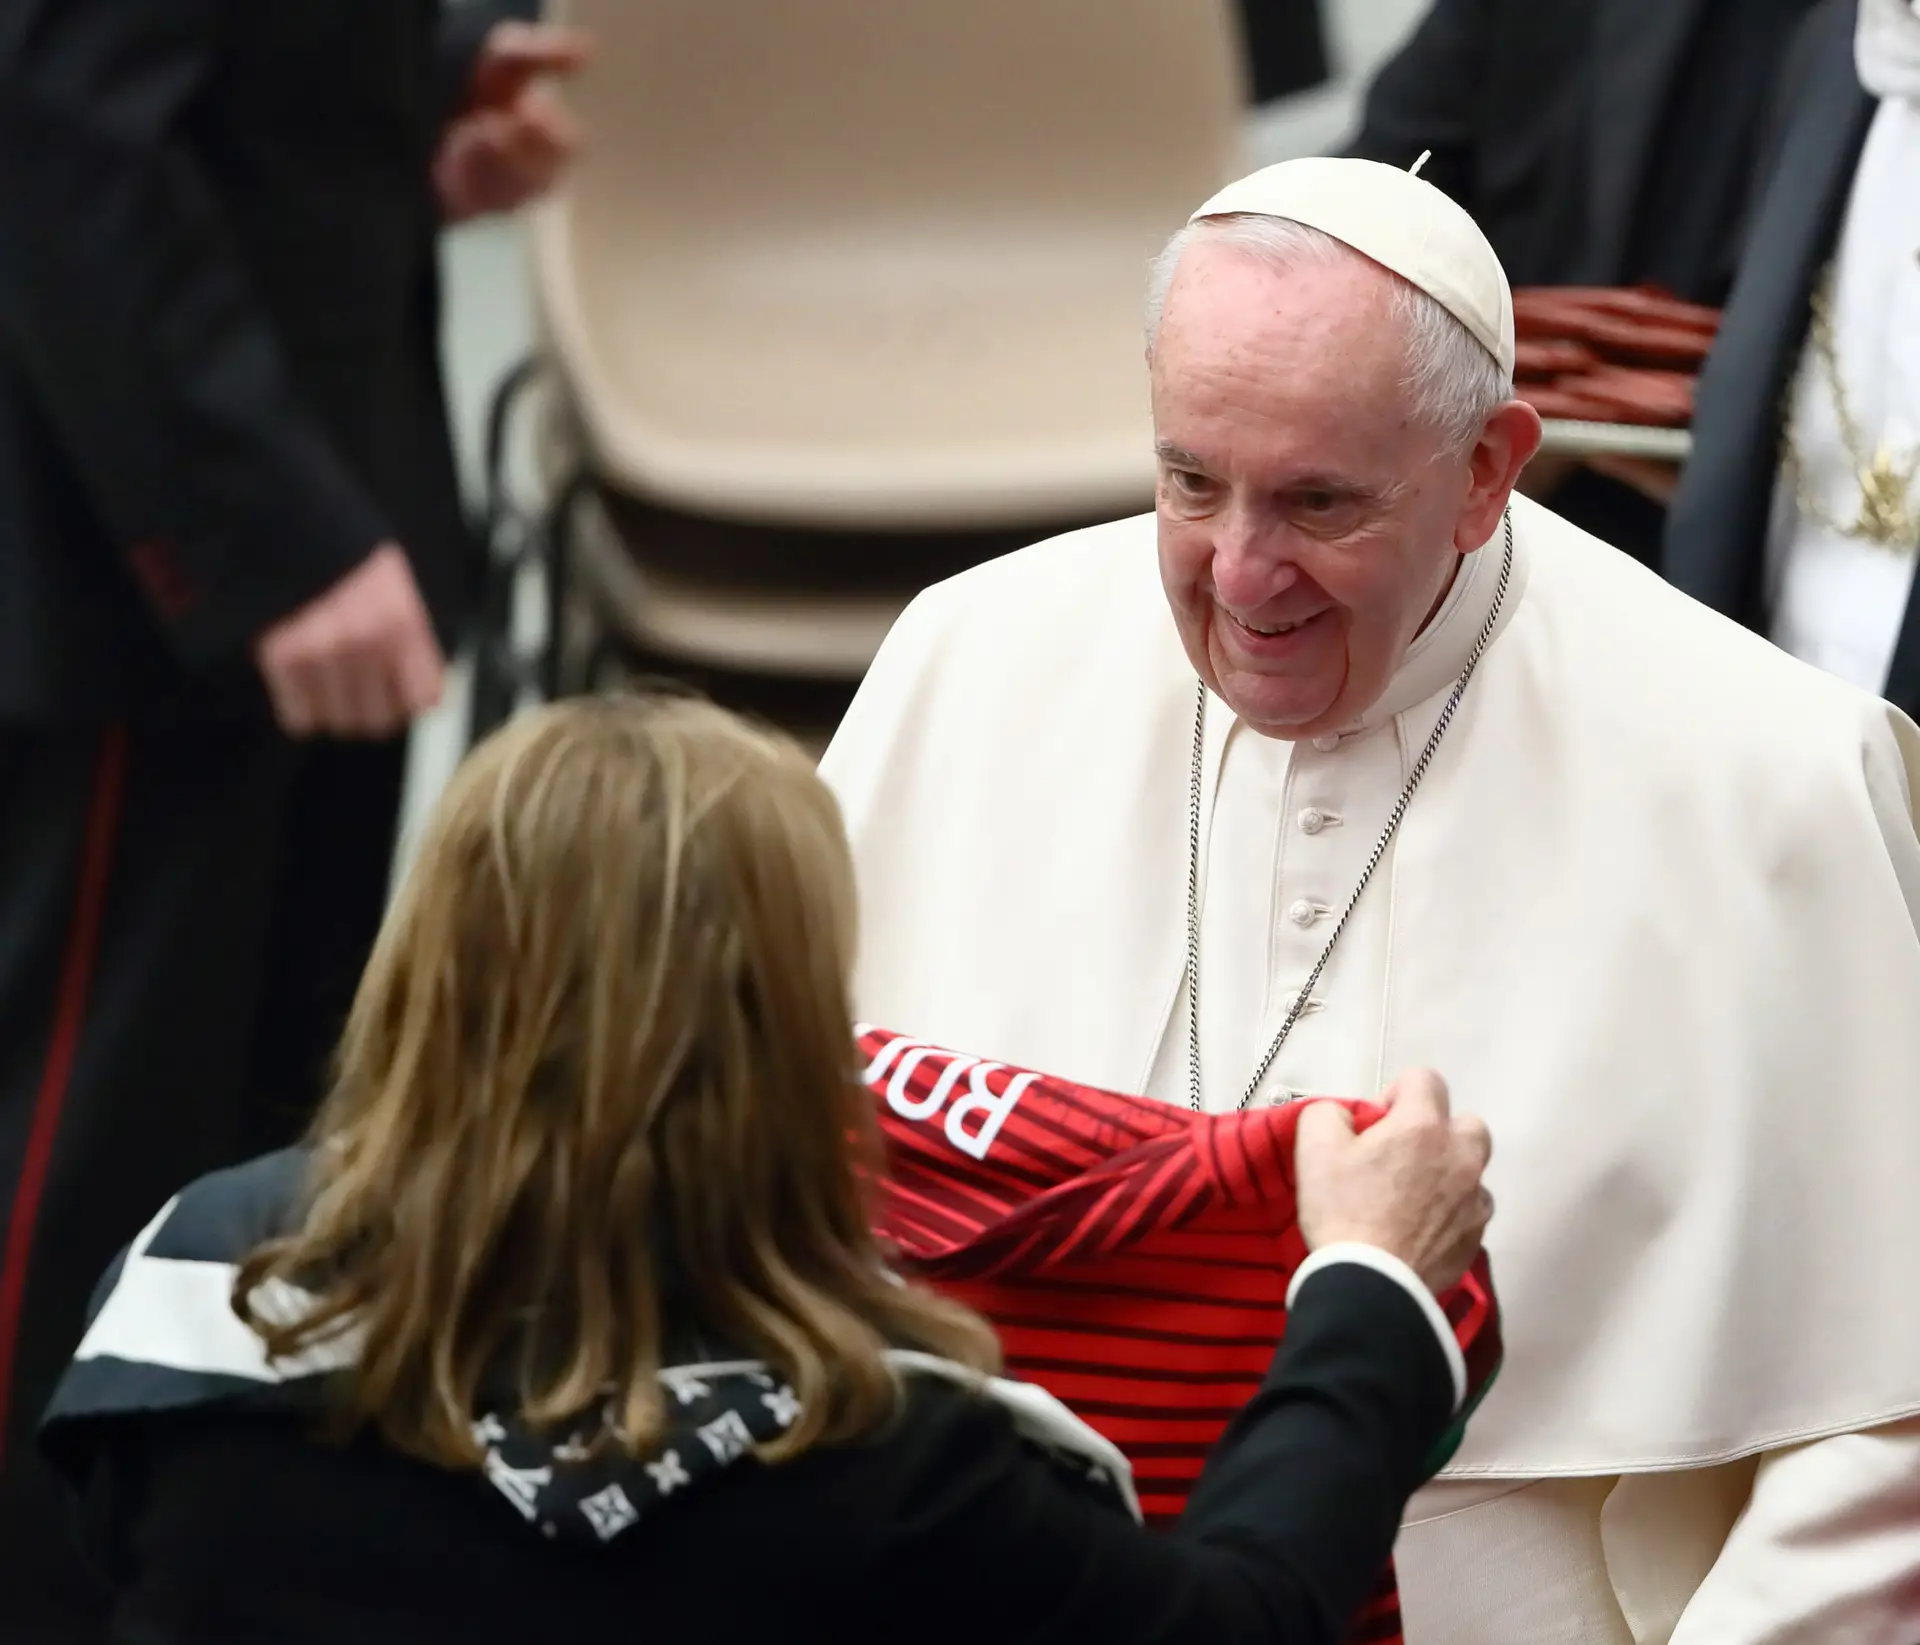 Dolores Aveiro no Vaticano para entregar camisola de Cristiano Ronaldo ao Papa Francisco